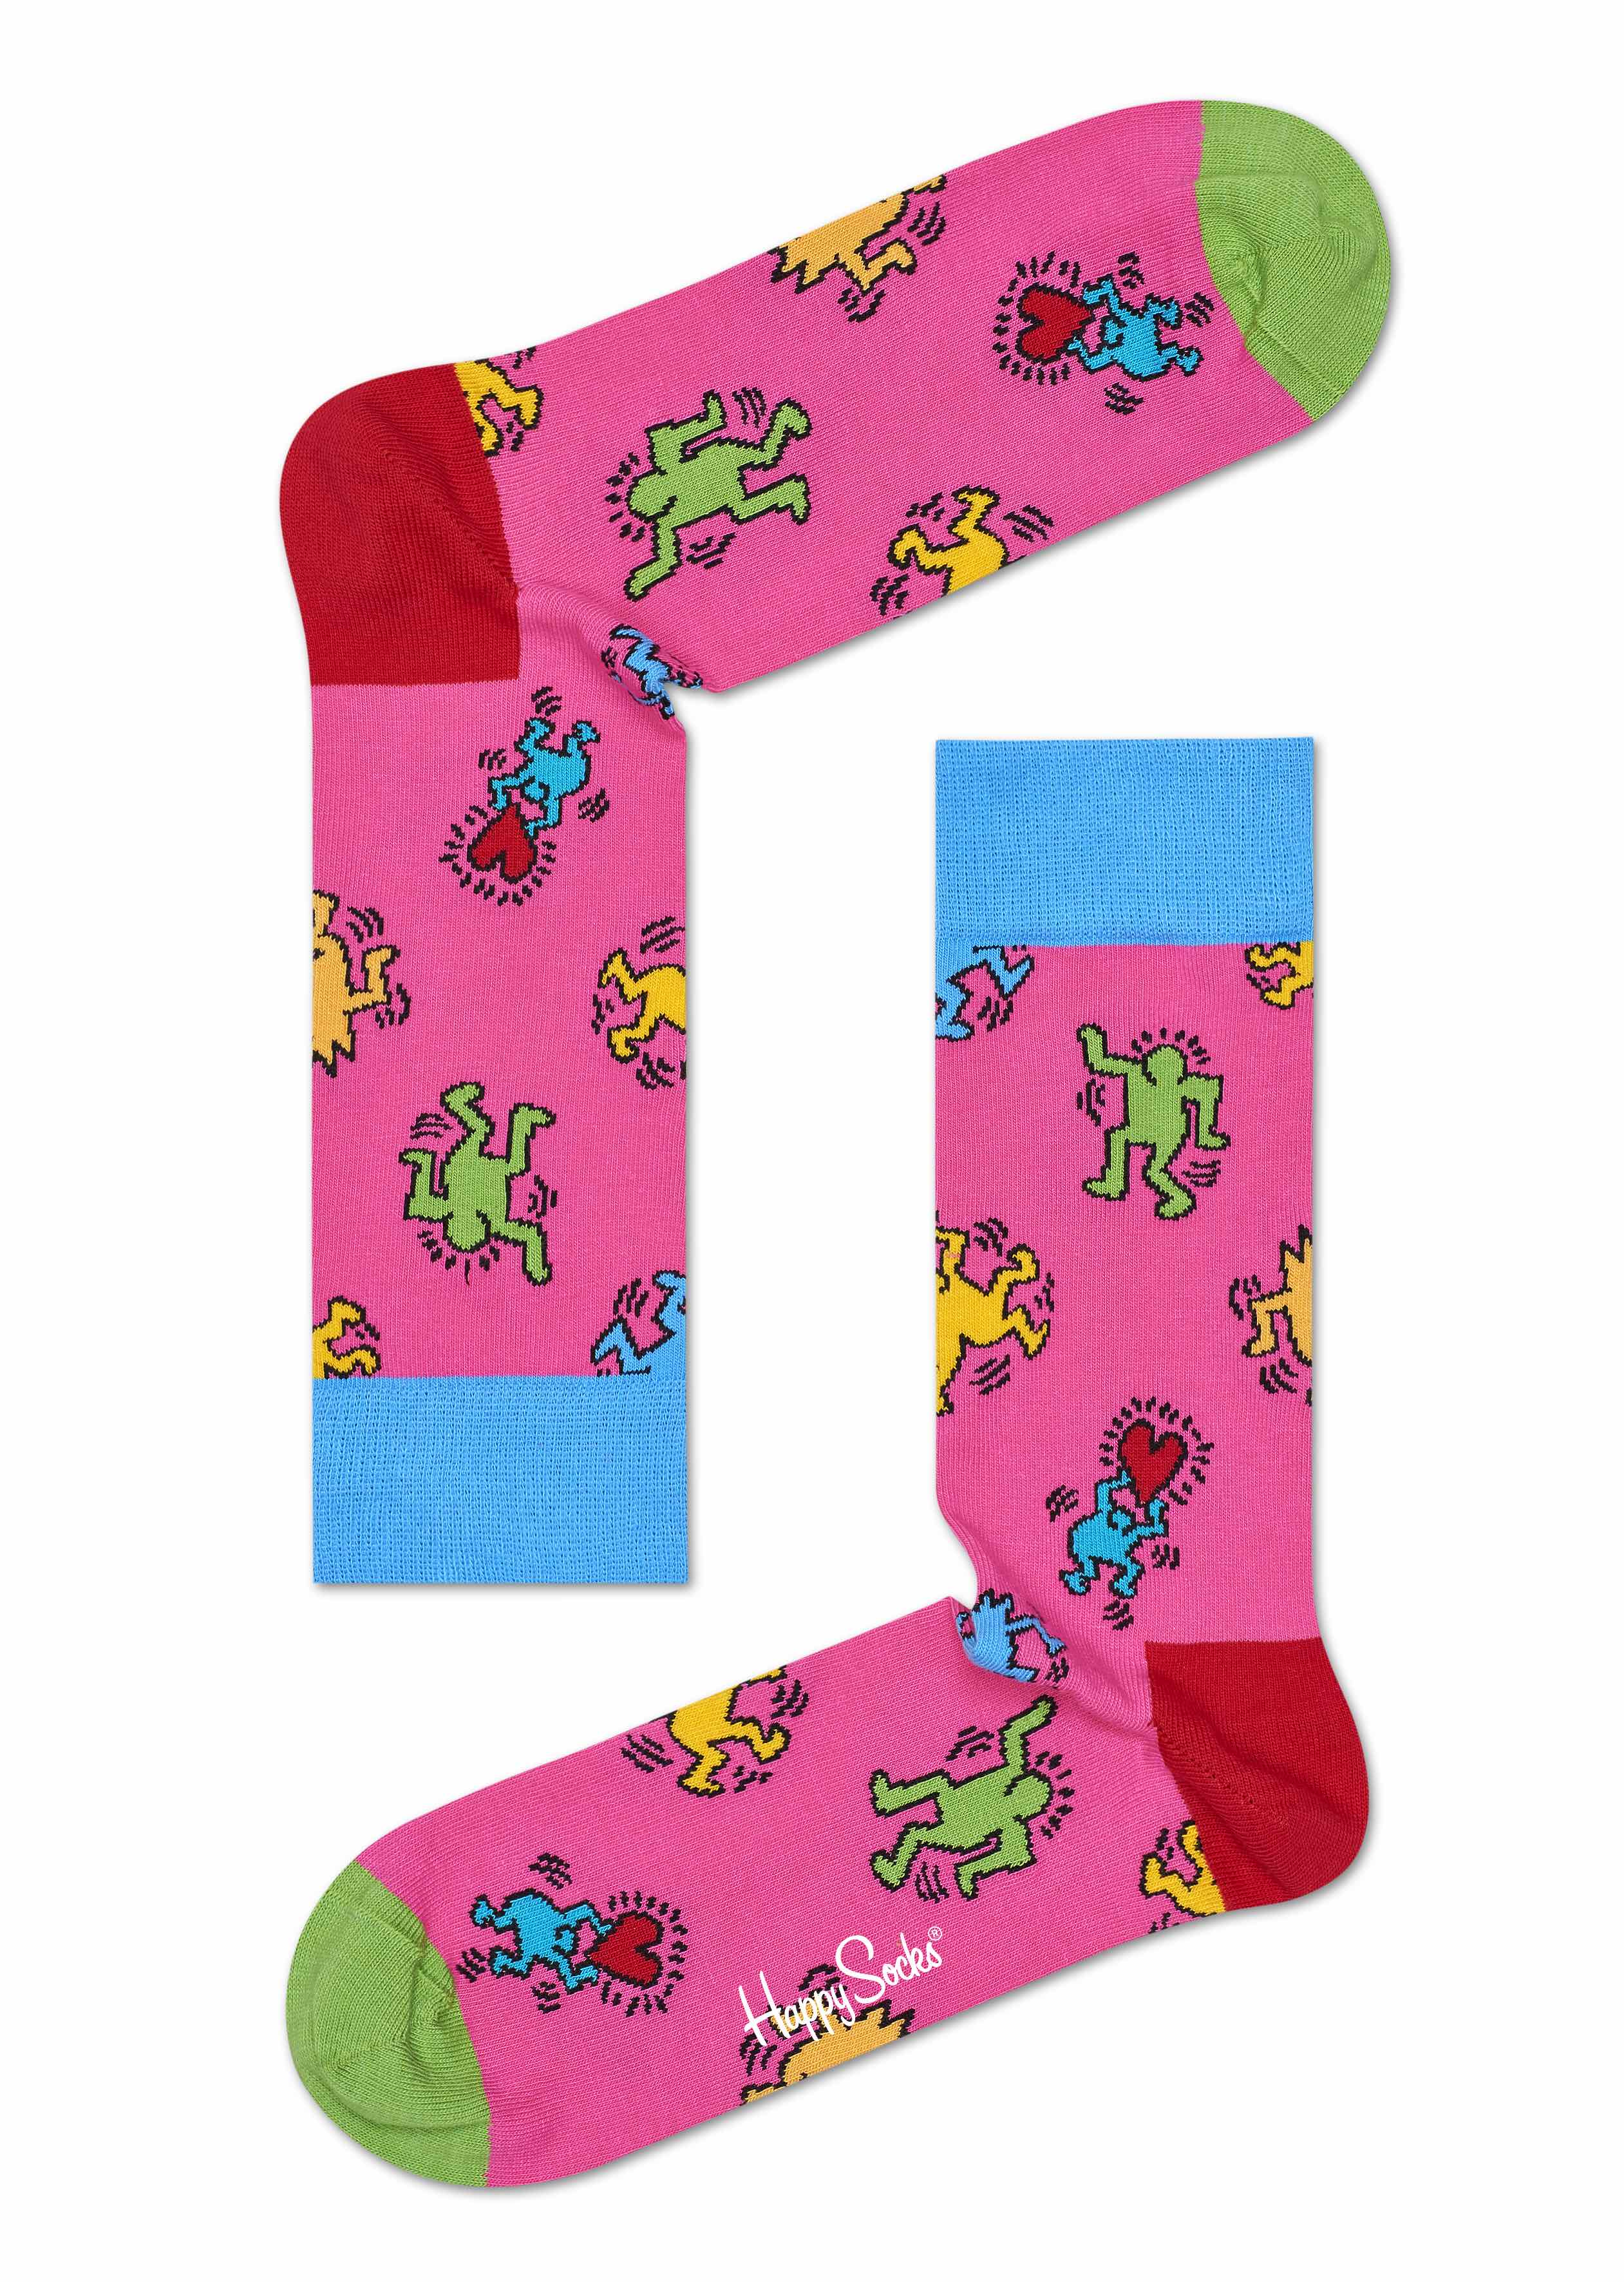 Happy Socks x Keith Haring strumpor rosa ny